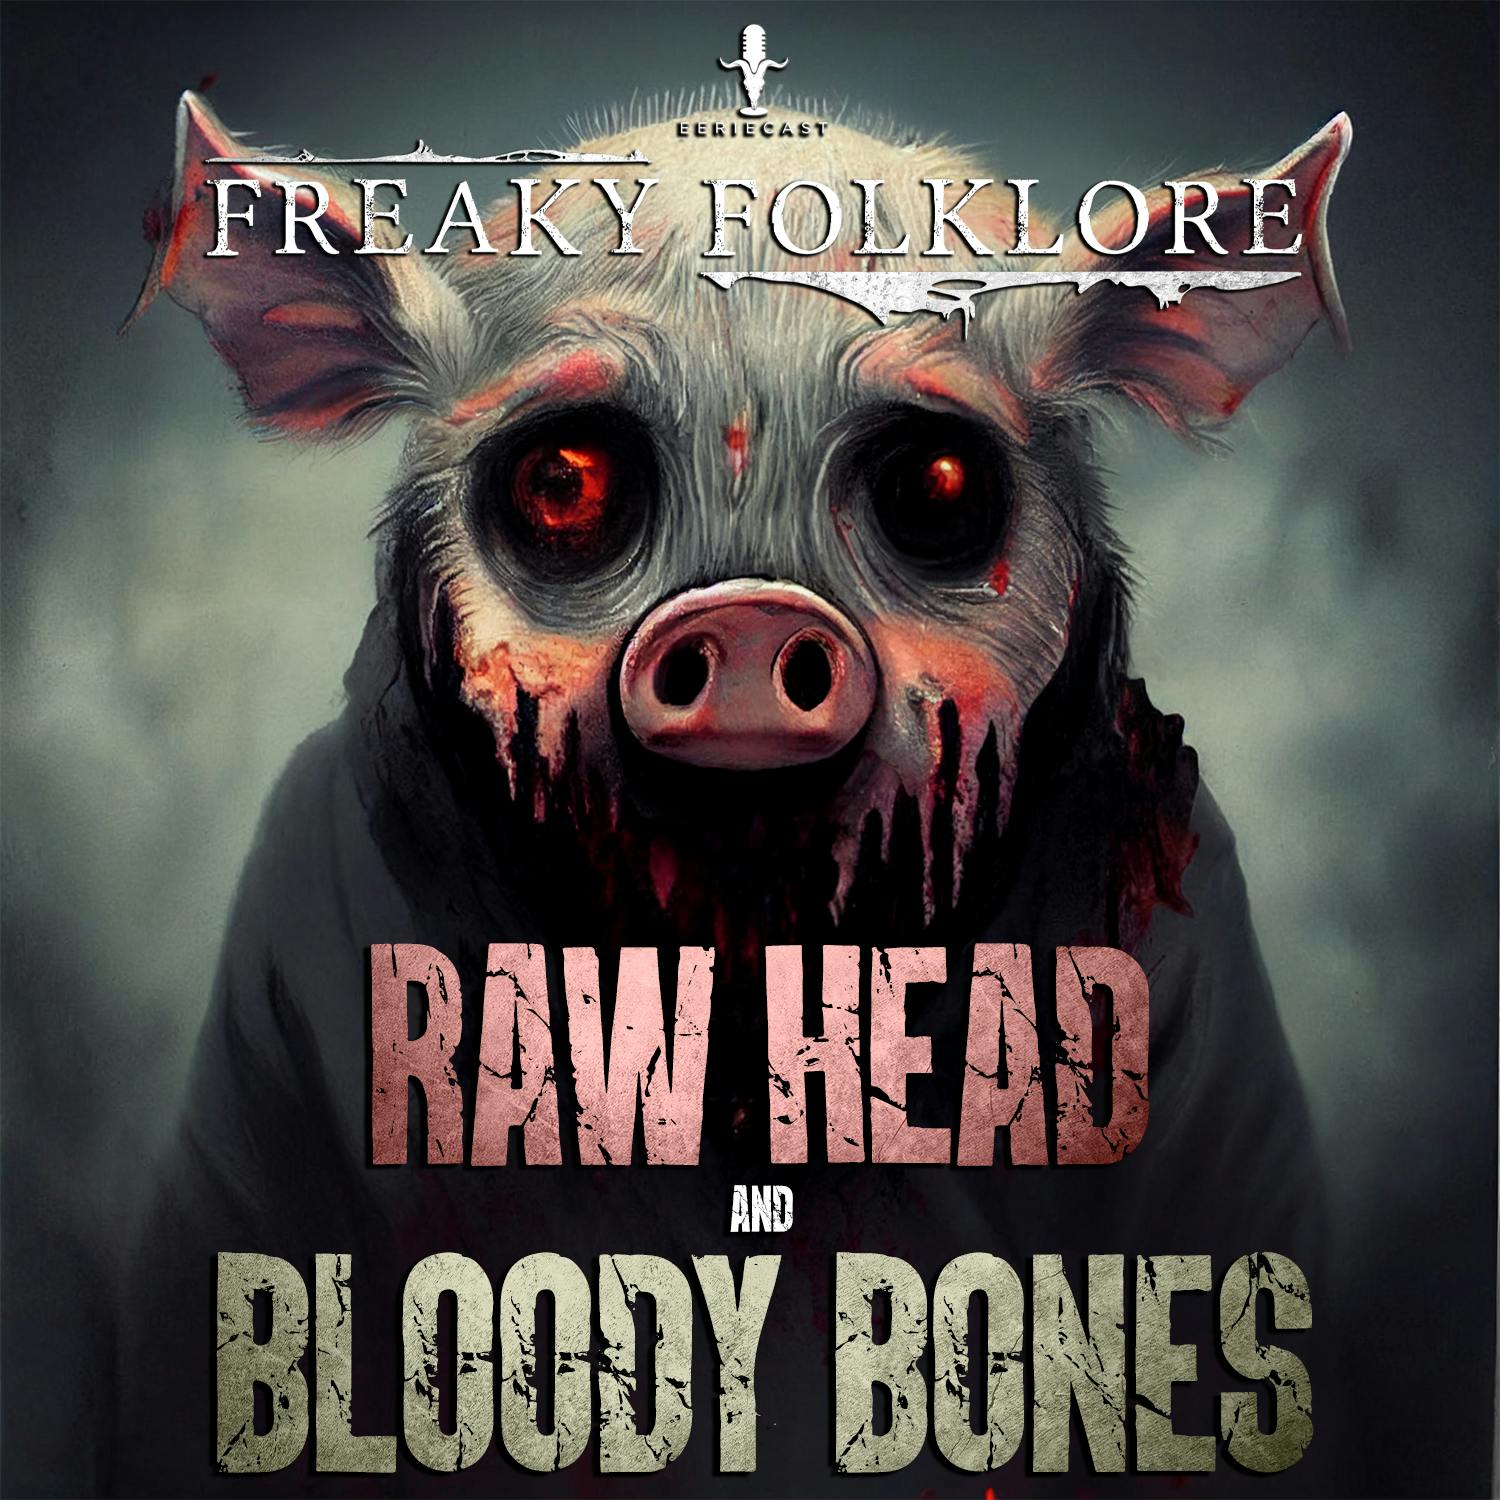 Rawhead & Bloody Bones - A Gruesome Urban Legend